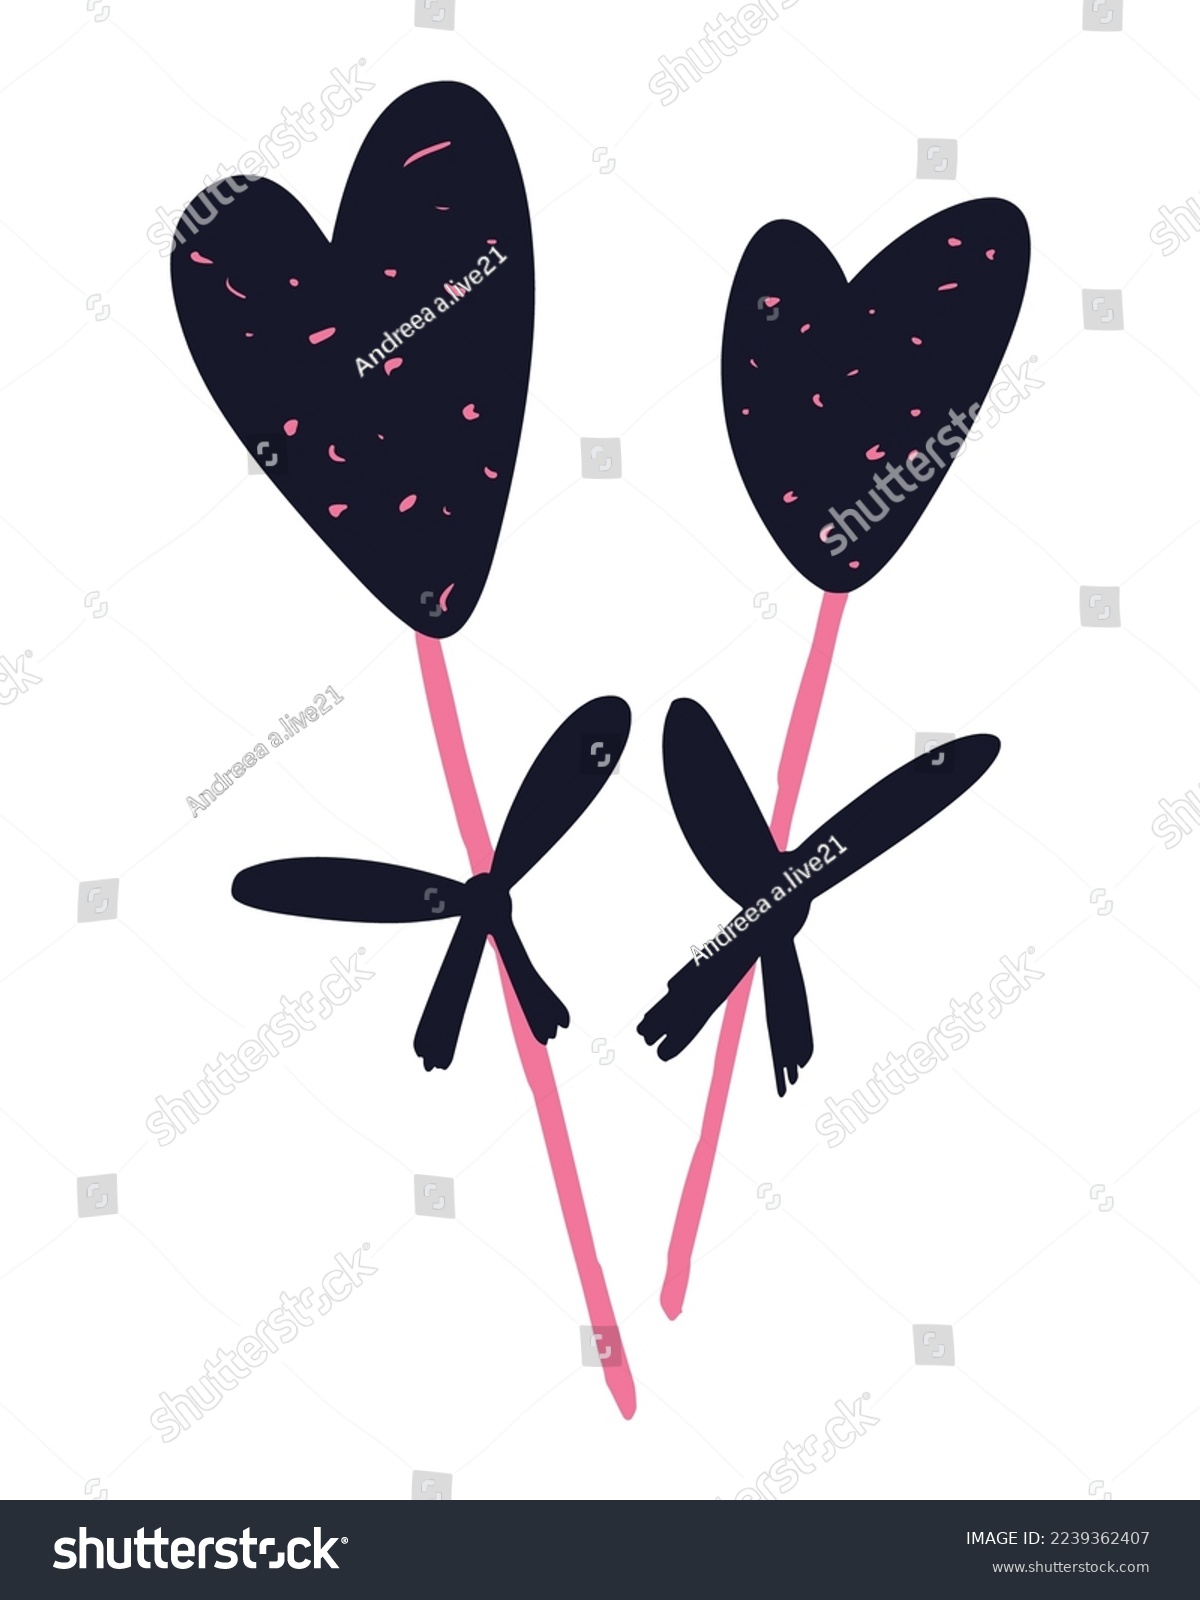 SVG of Valentine's Day Vector SVG, Doodle Hearts Illustration, Hearts Vectors, Love Illustration, Pink Black Hearts, Painted Hearts Illustration svg